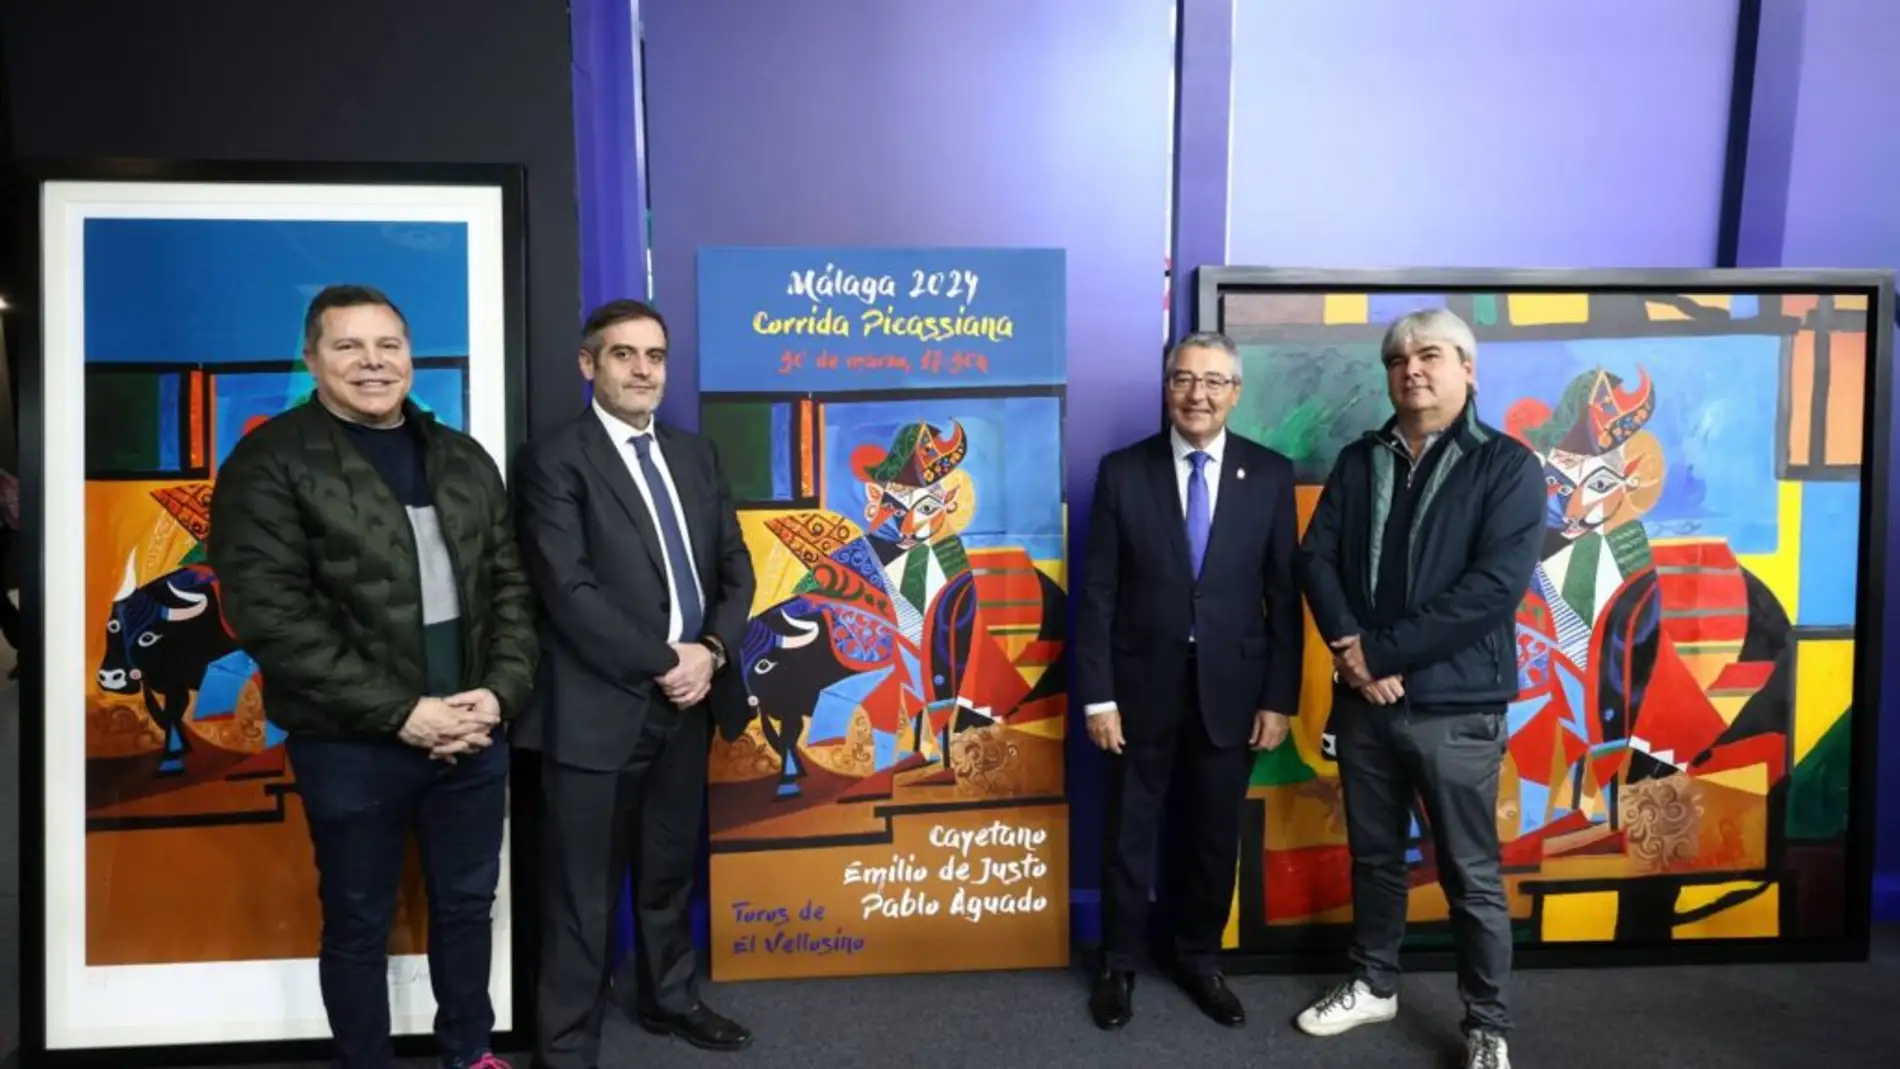 La Diputación de Málaga presenta en Fitur el cartel de la Corrida Picassiana: Cayetano, Emilio de Justo y Pablo Aguado 